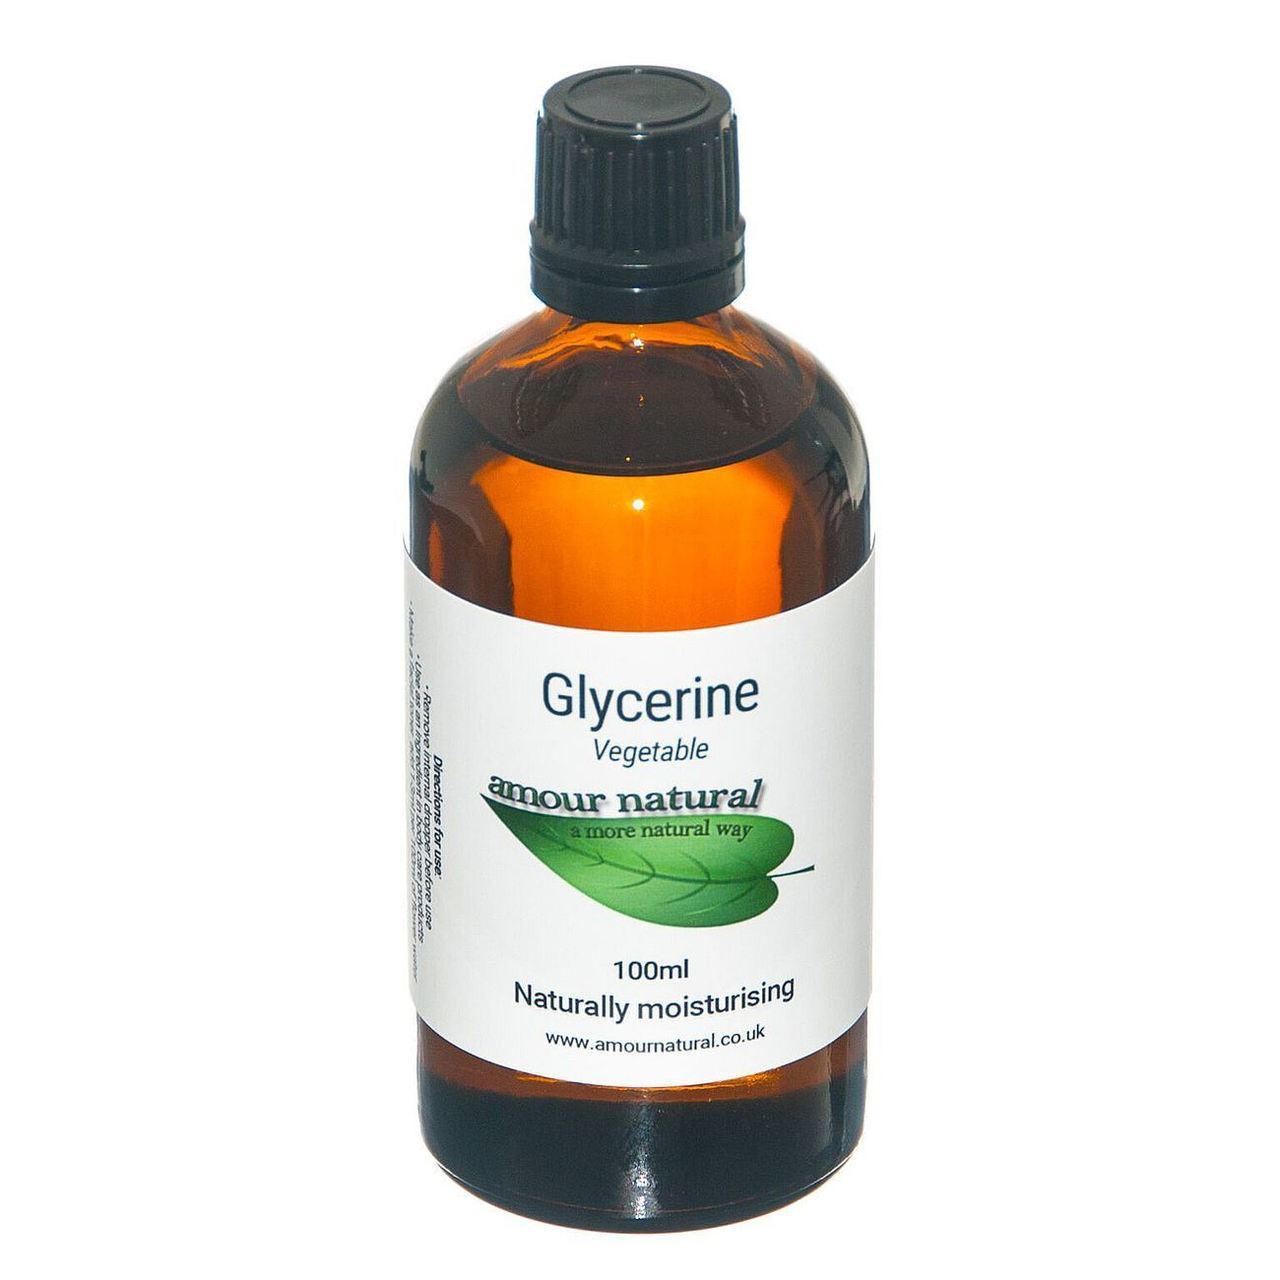 Glycerine (Vegetable) Pure 100ml